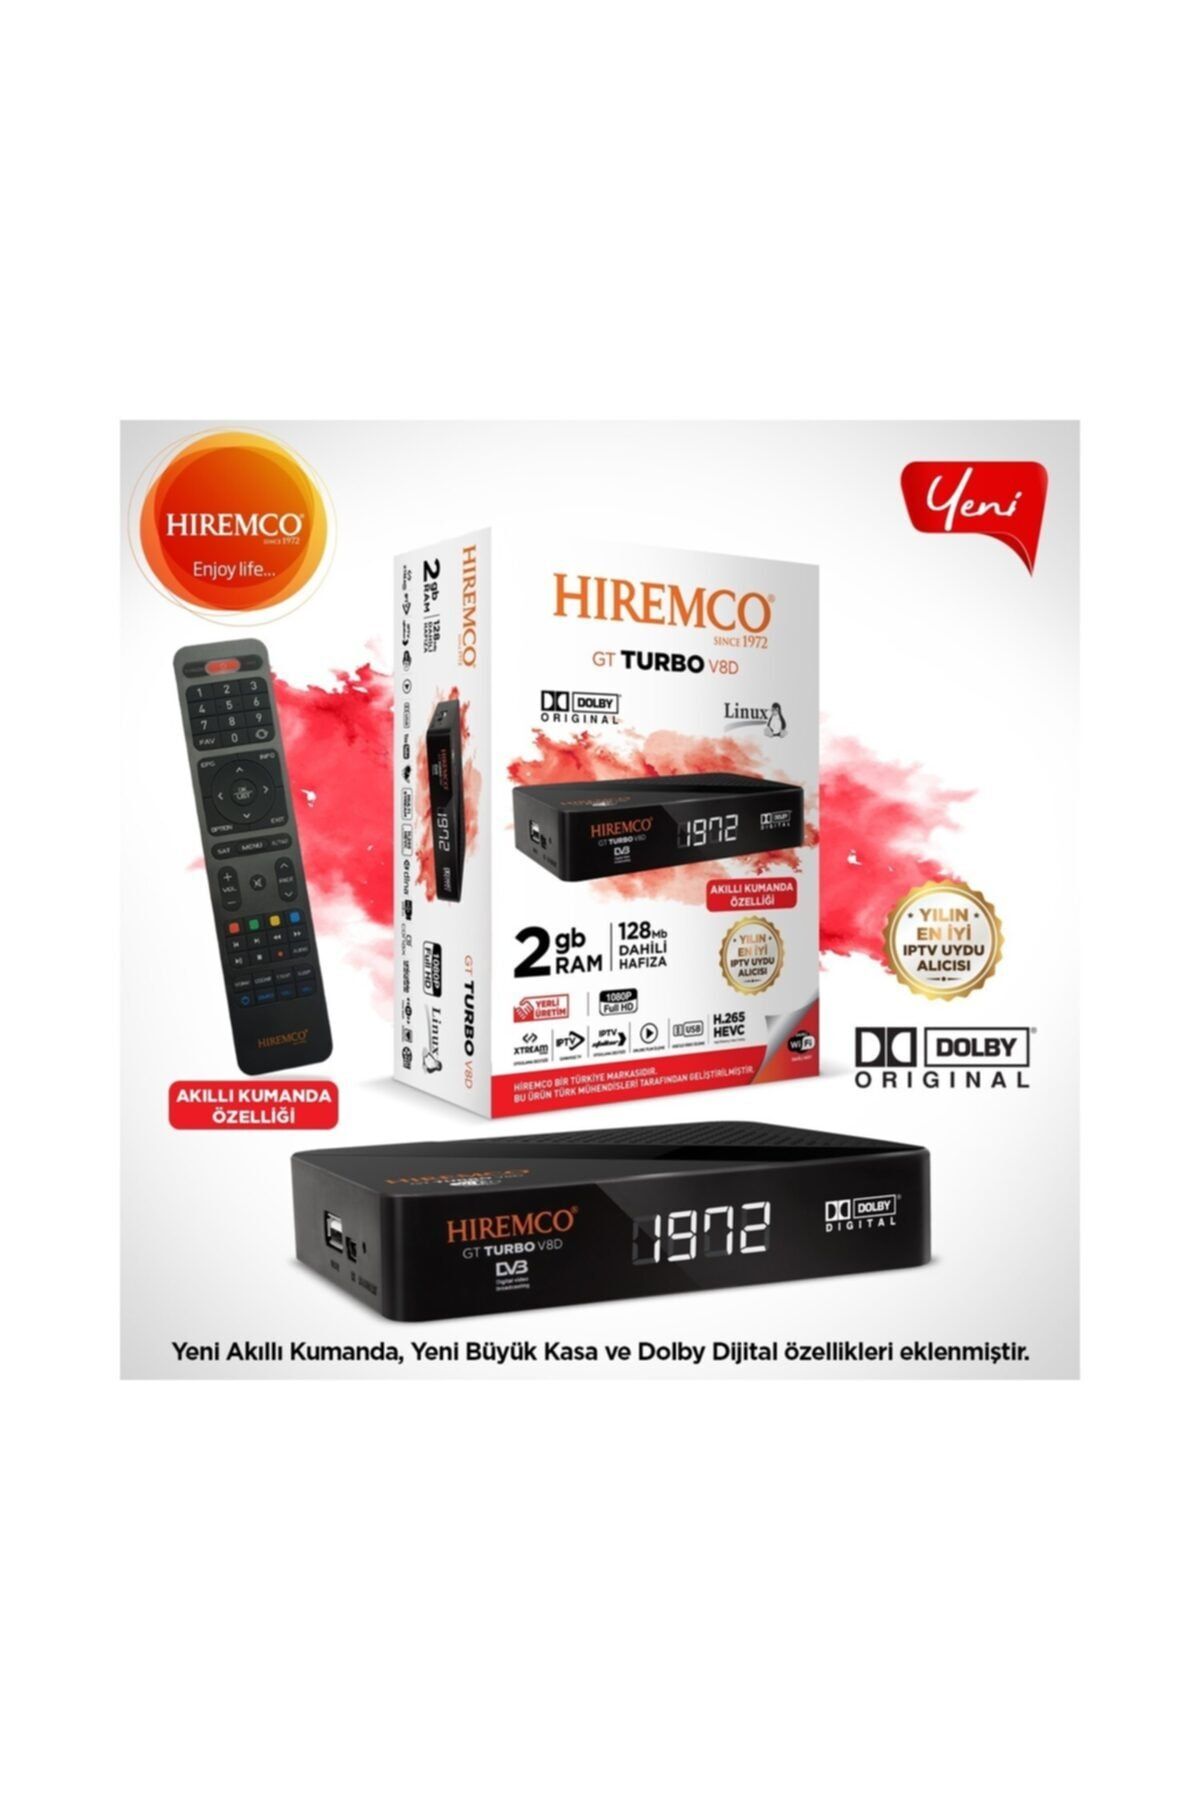 Hiremco Gt Turbo V8d - Dolby Ses, Akıllı Kumanda, En Son Seri